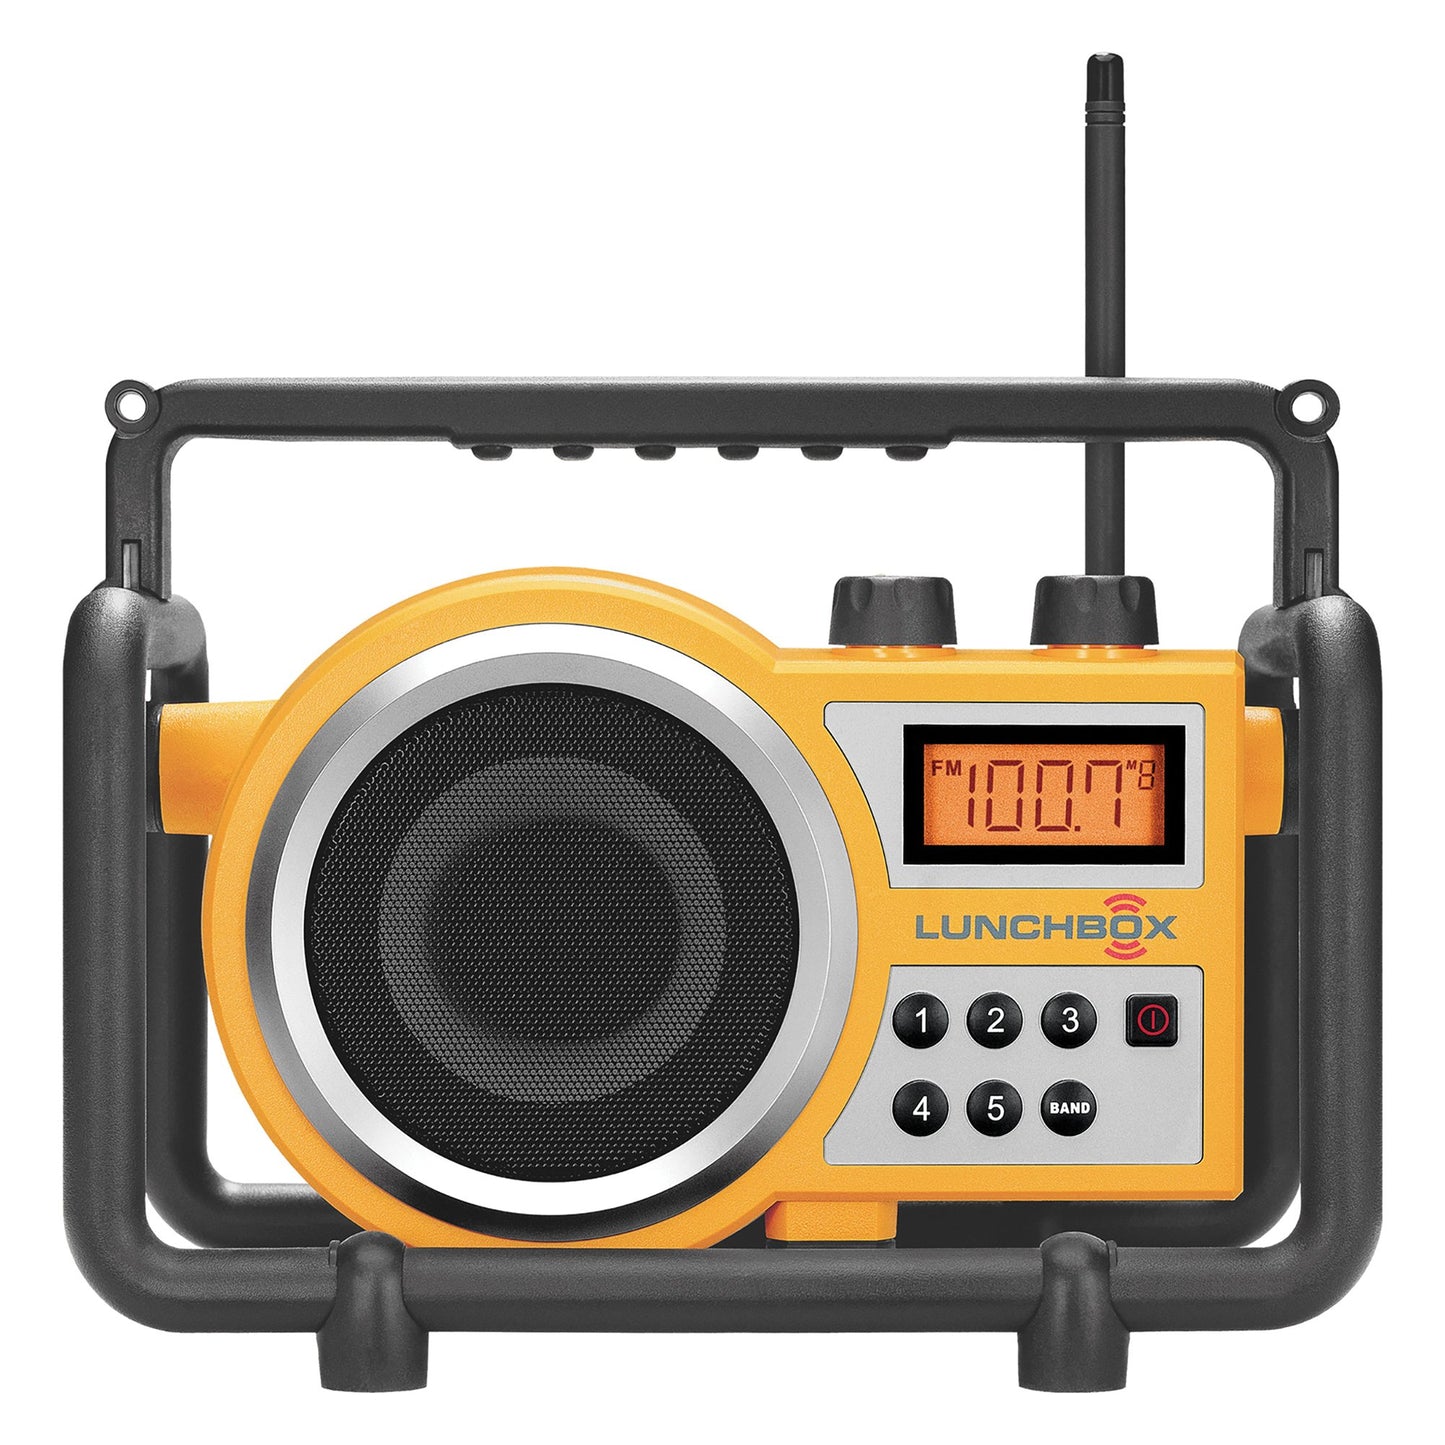 SANGEAN SNGLB100 FM/AM Ultra-Rugged Utility Worksite Digital Radio (Yellow)